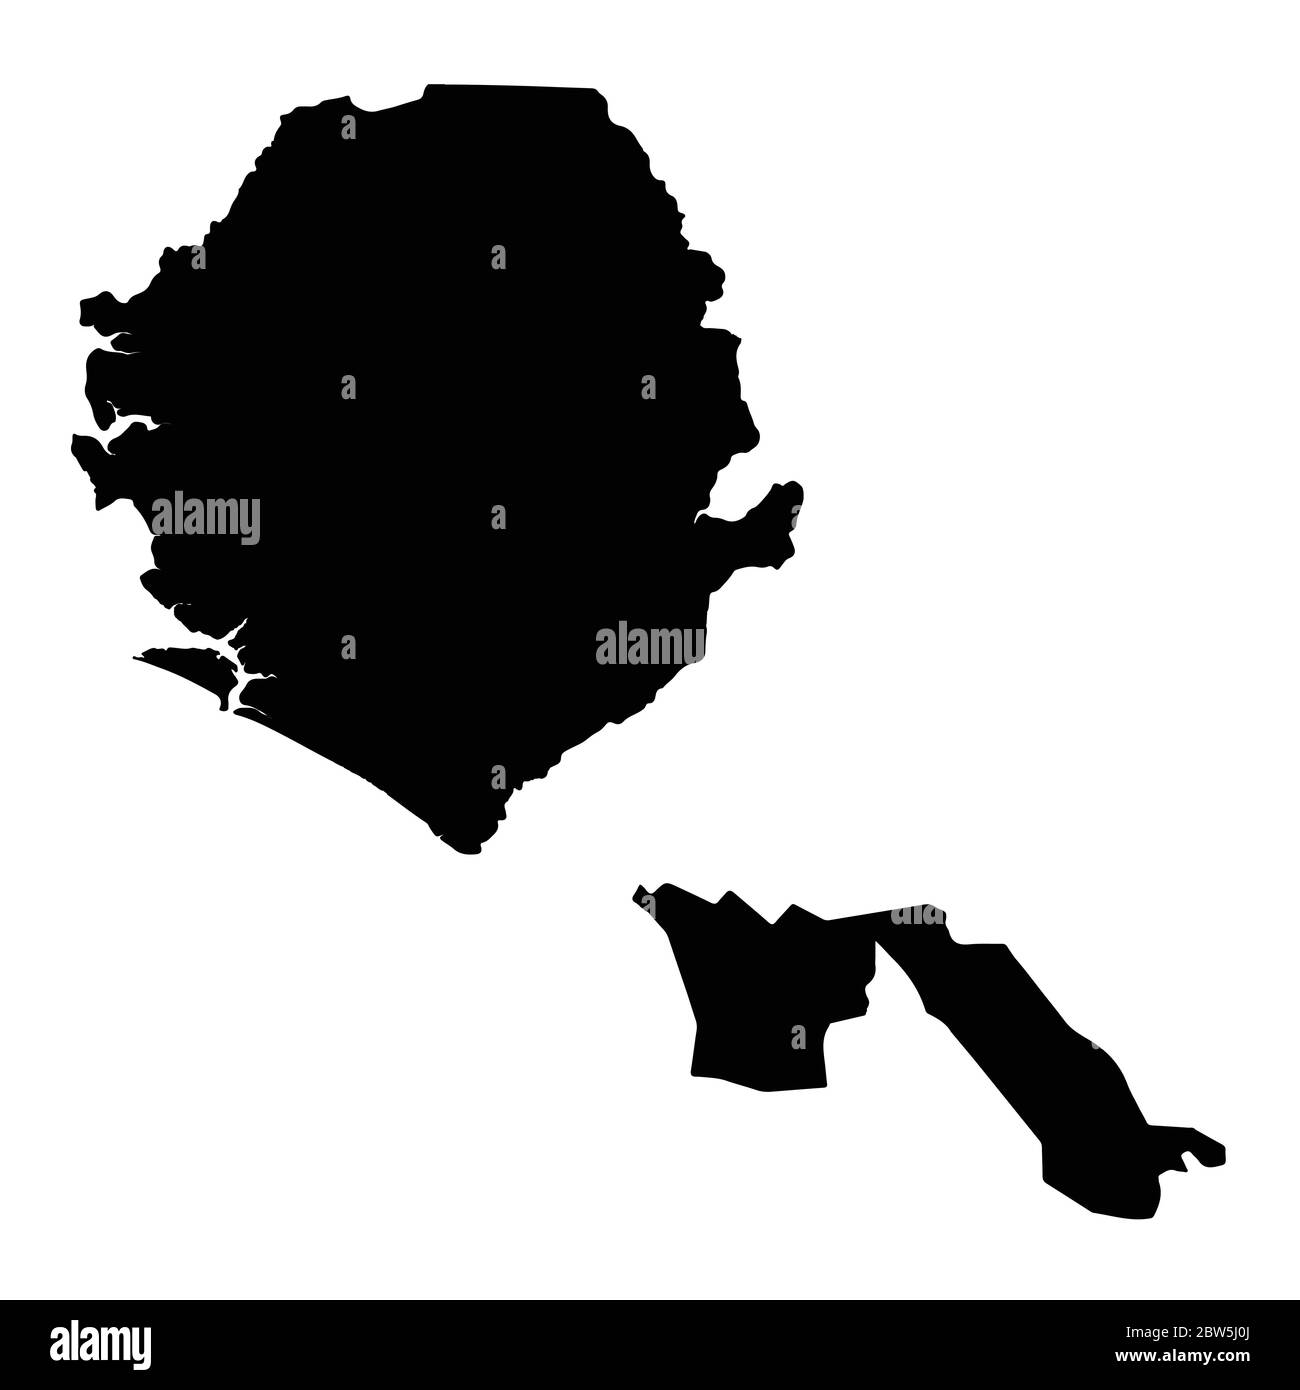 Vektorkarte Sierra Leone und Freetown. Land und Hauptstadt. Isolierte Vektorgrafik. Schwarz auf weißem Hintergrund. EPS 10-Abbildung. Stock Vektor